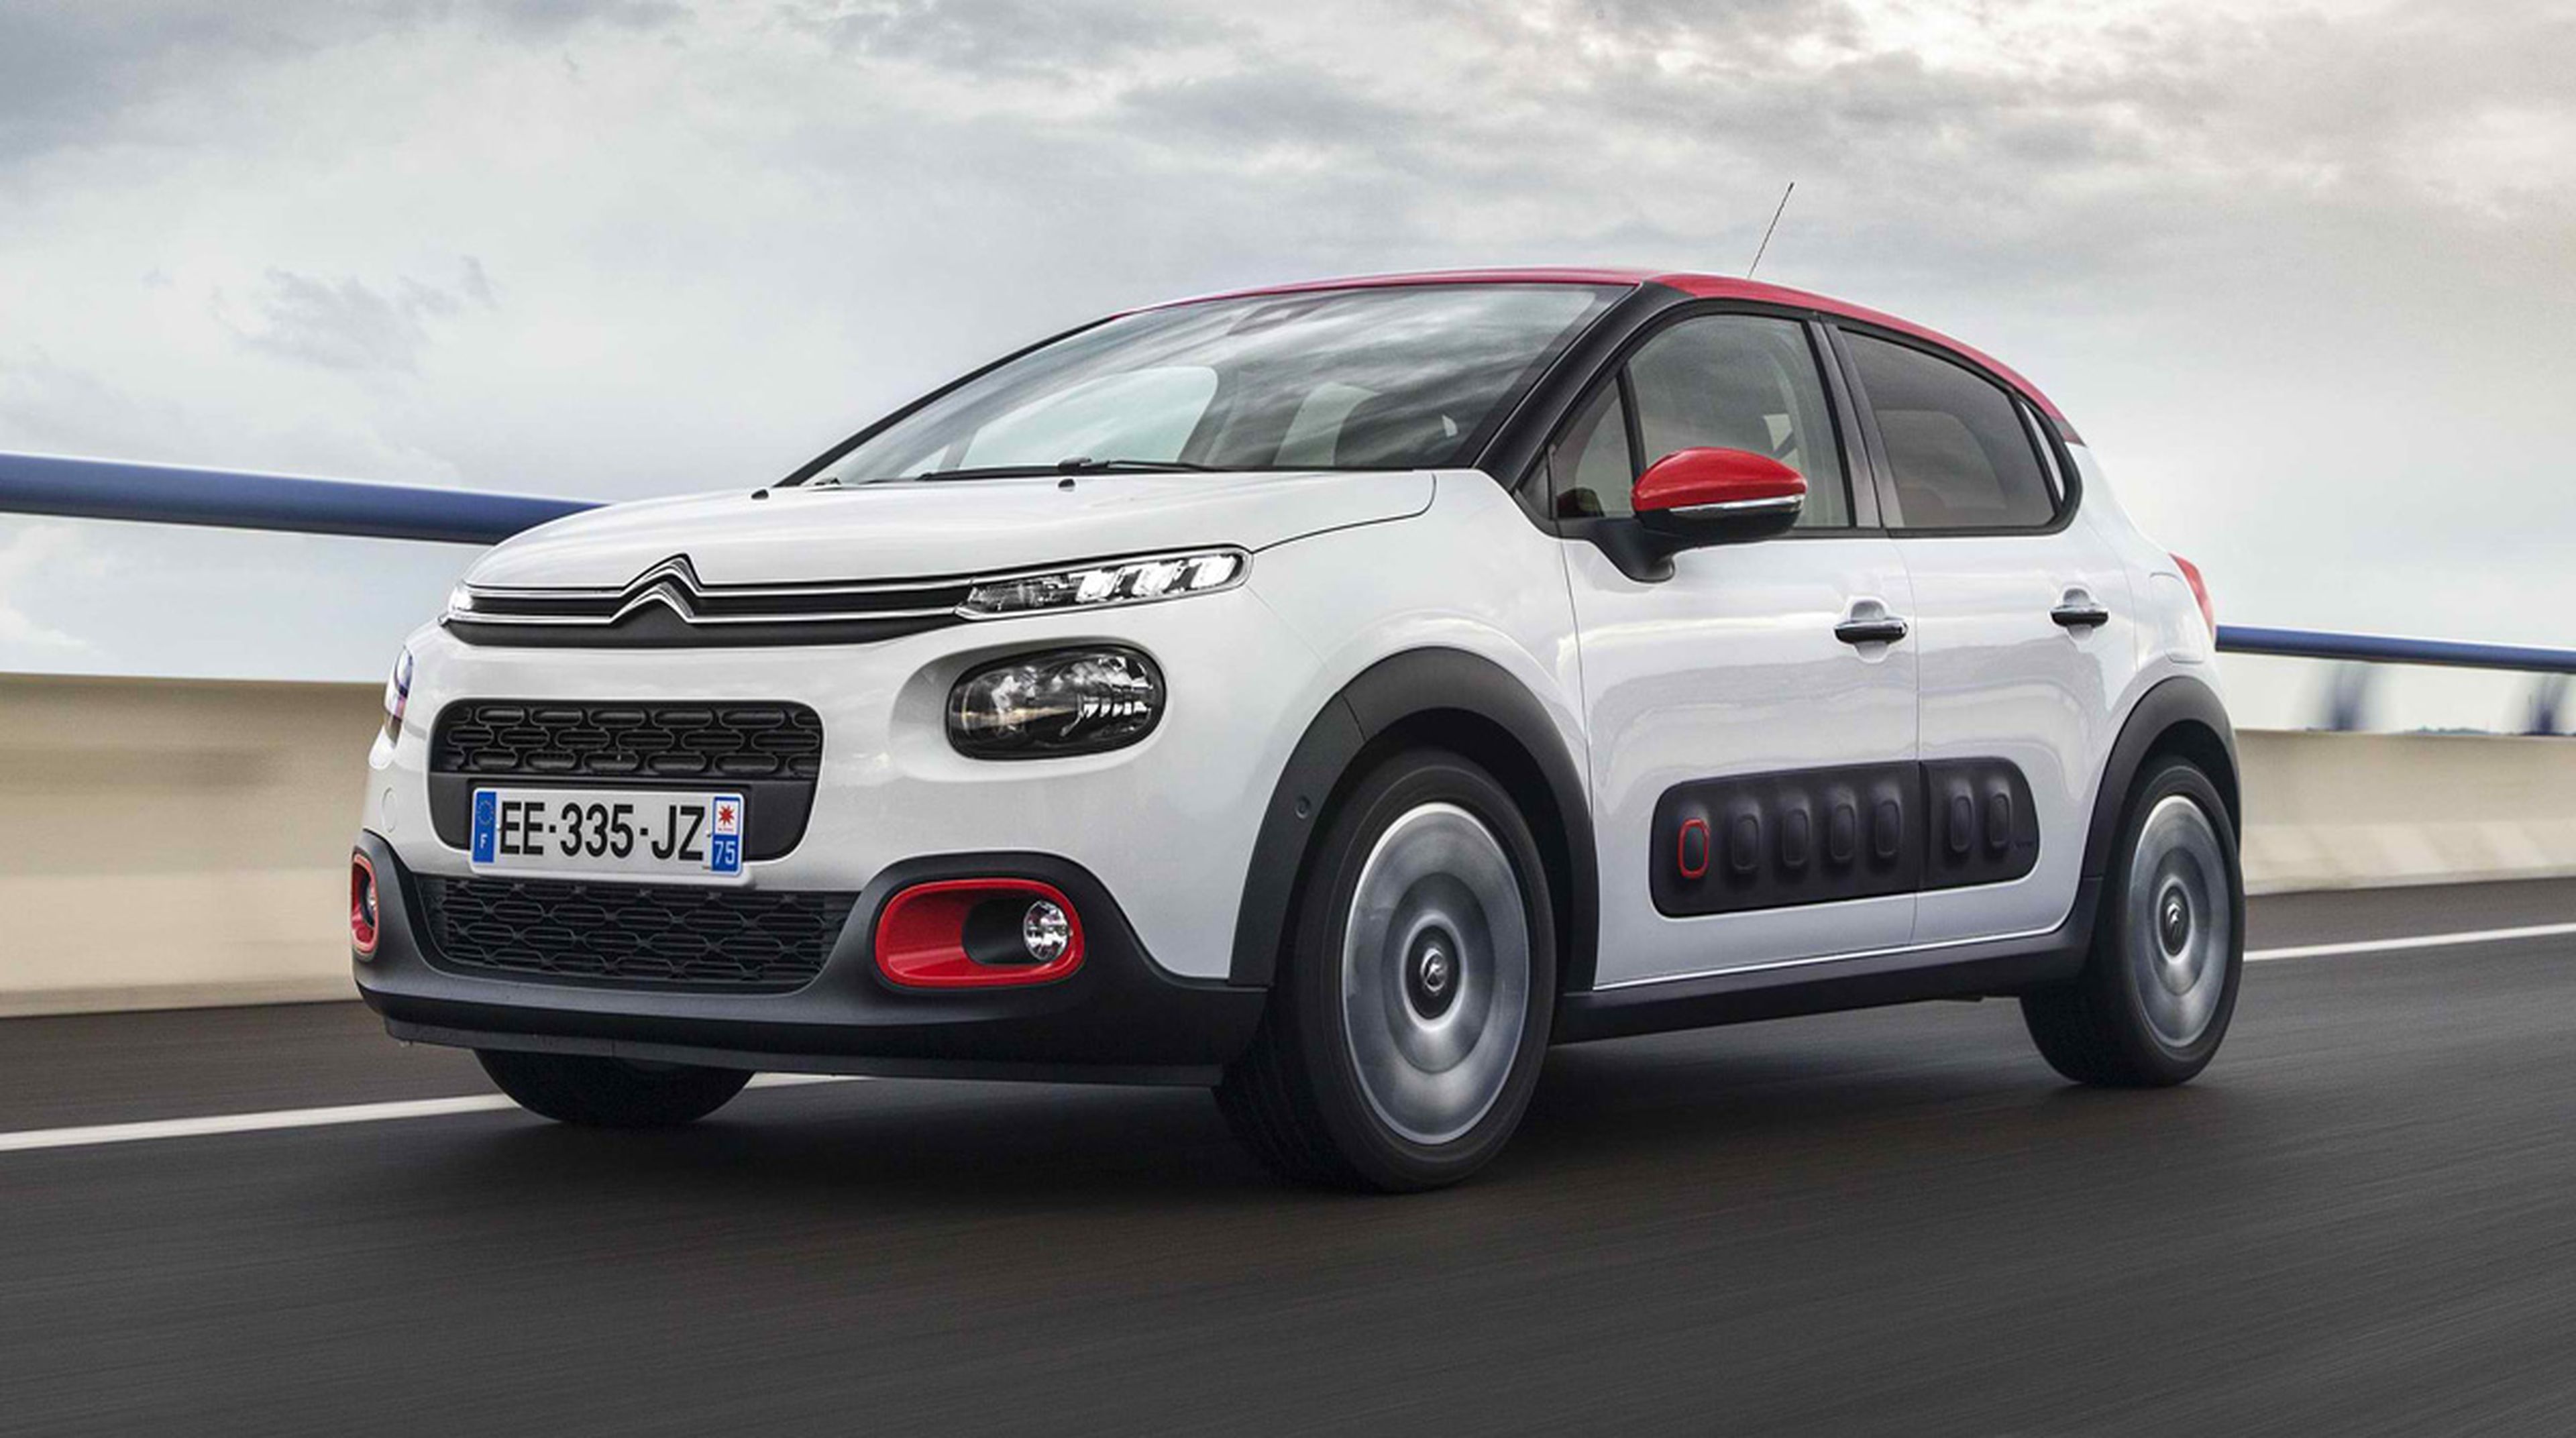 El Citroën C3 es de los utilitarios con consumos más bajos